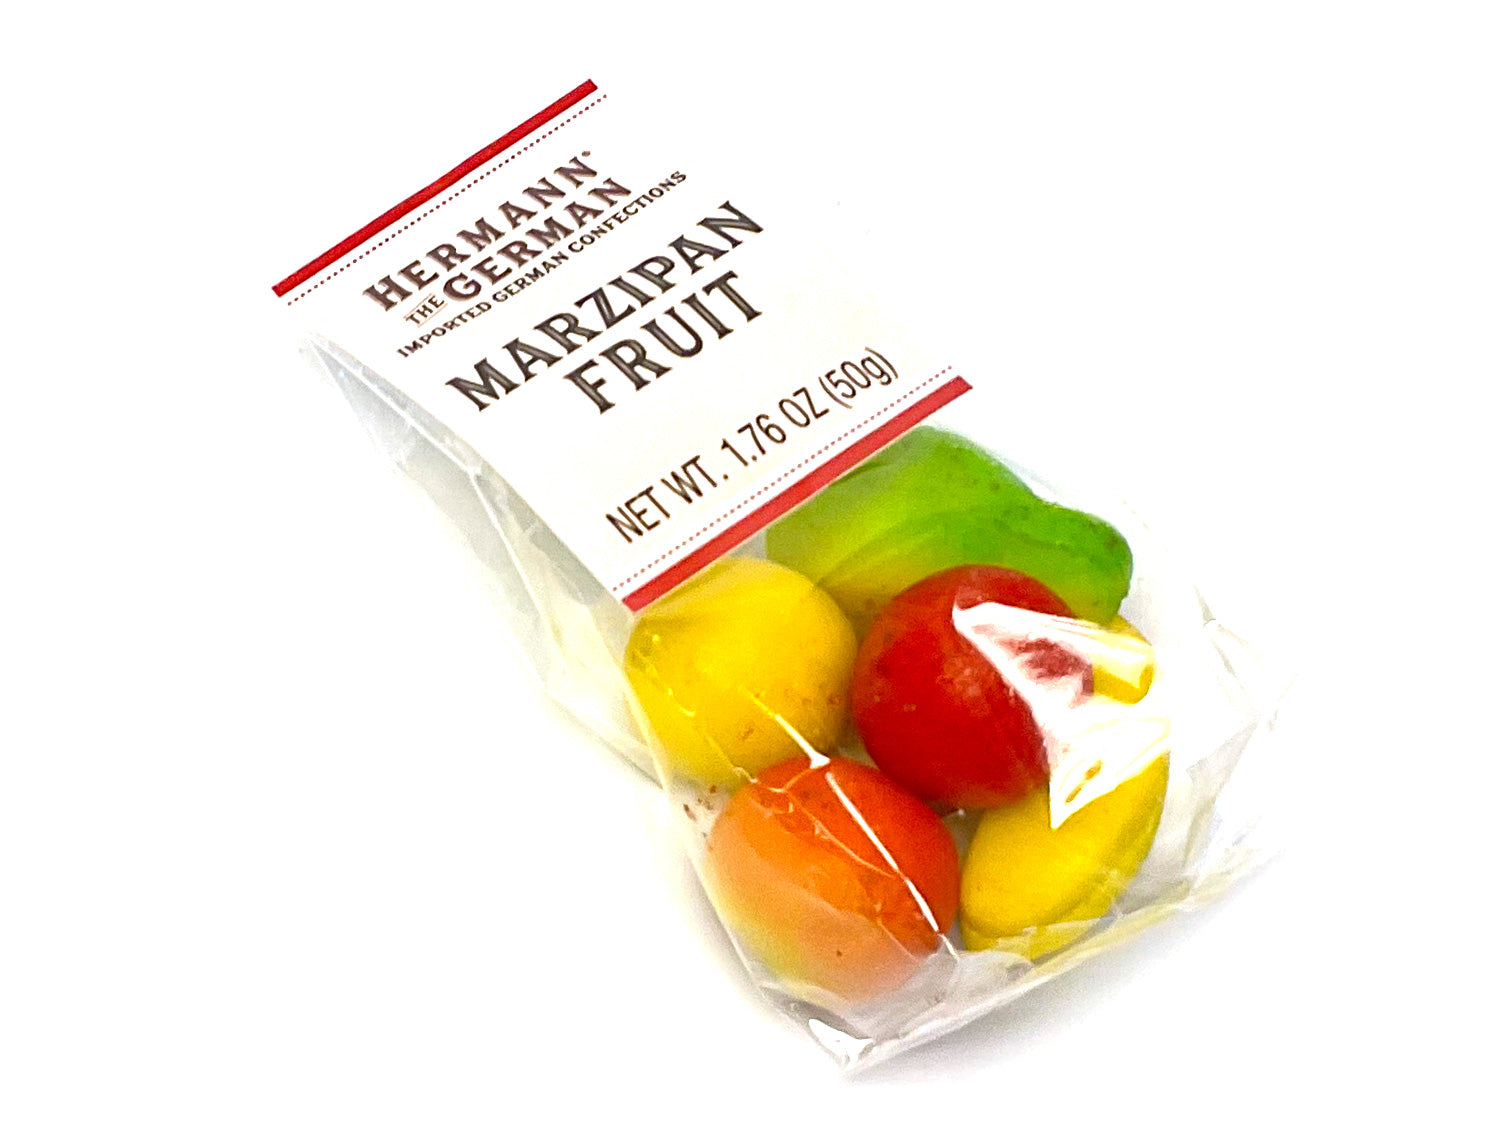 Marzipan Fruit - 5-piece bag - 1.76 oz